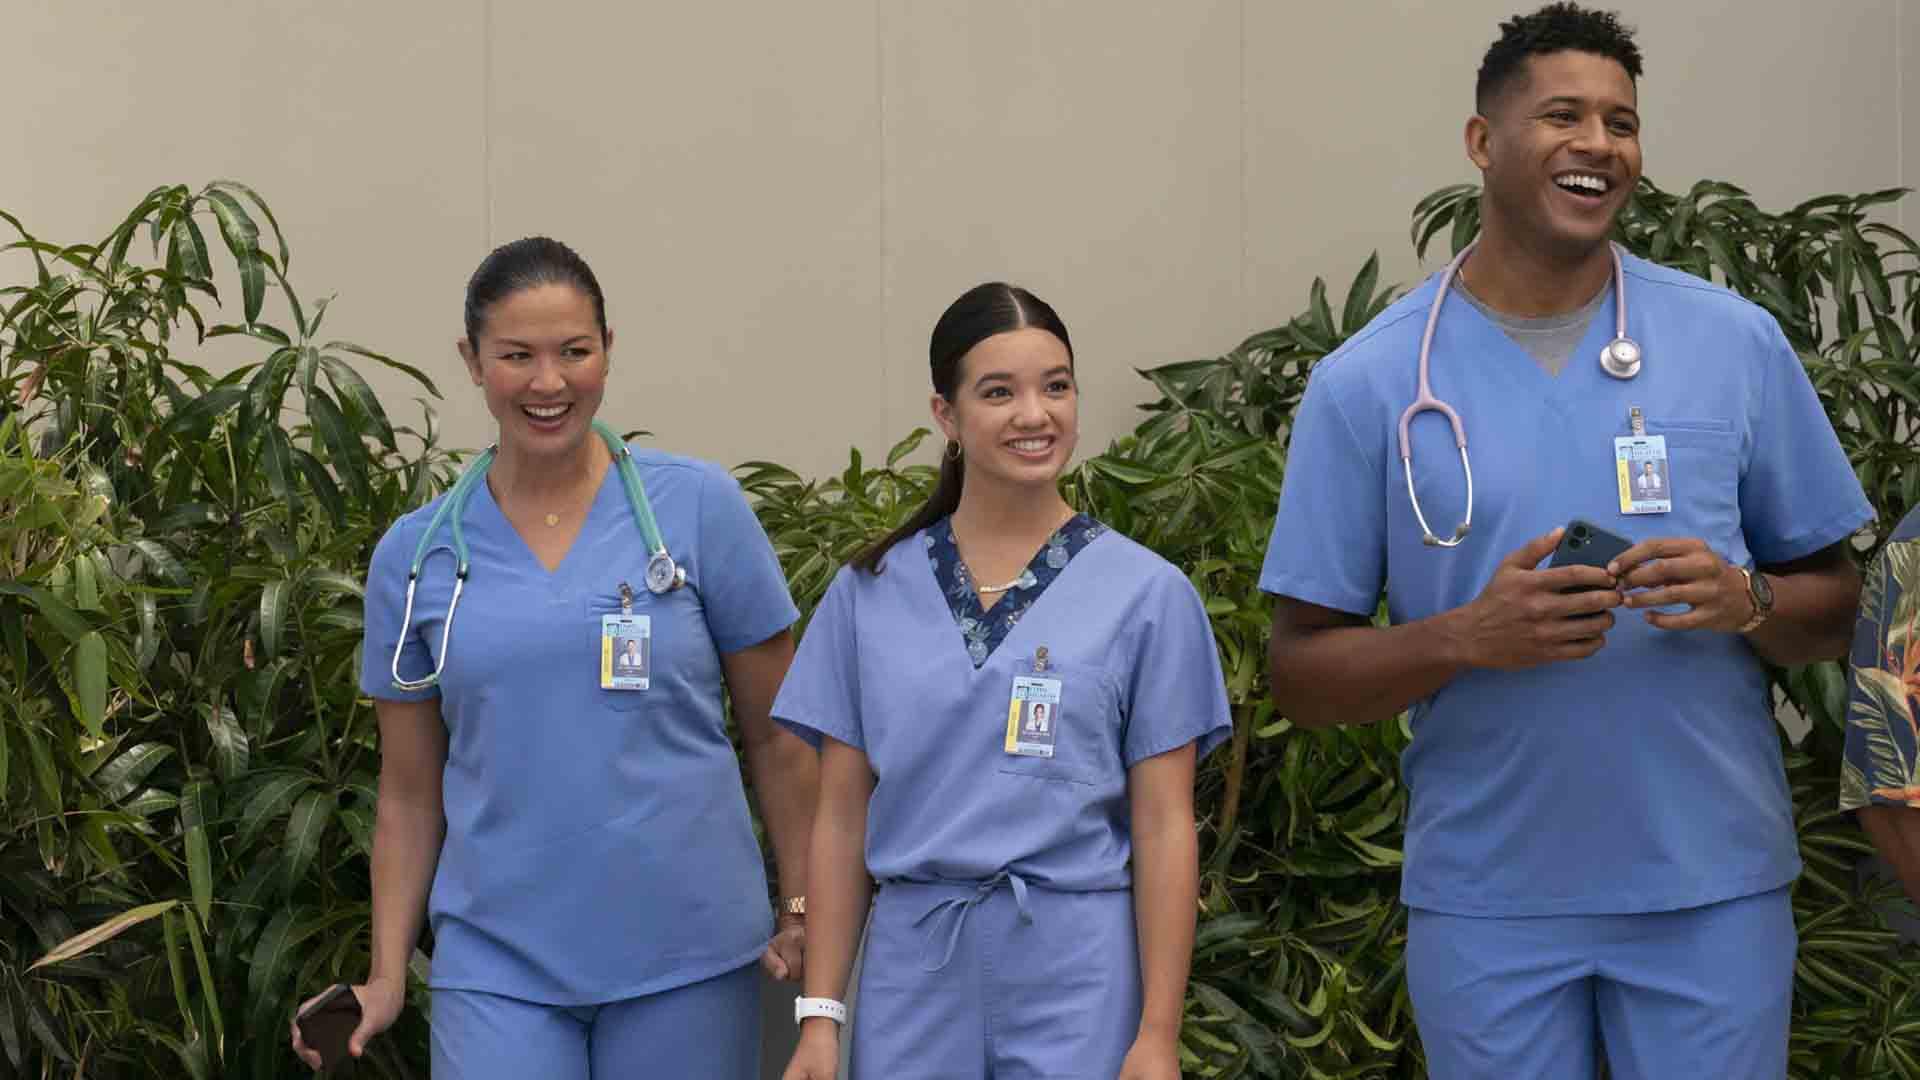 پیتون الیزابت لی، به همراه دو همکار پزشک خود در سریال Doogie Kamealoha, M.D. 